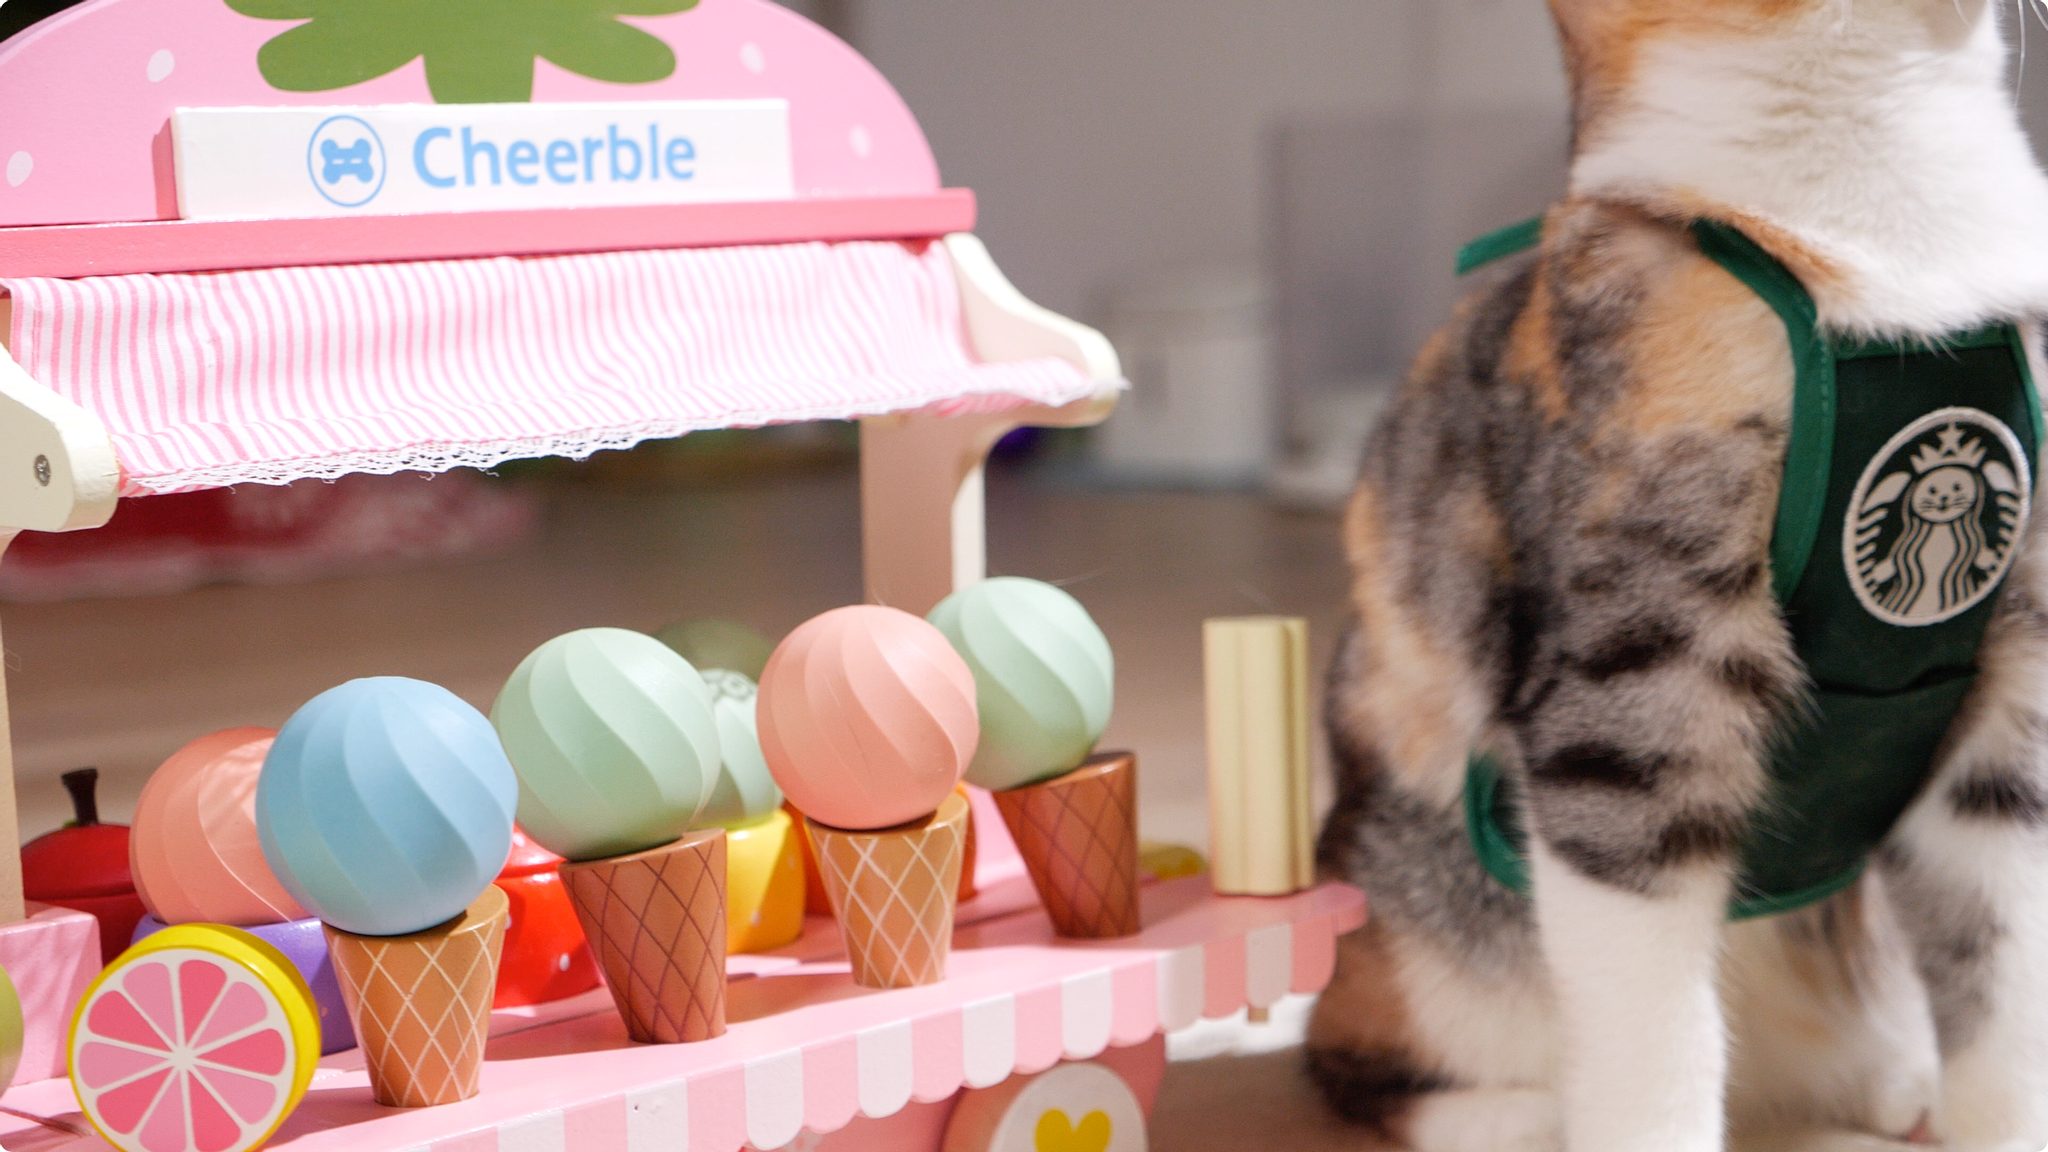 Cheerble Ice Cream pohyblivá hračka pro kočky